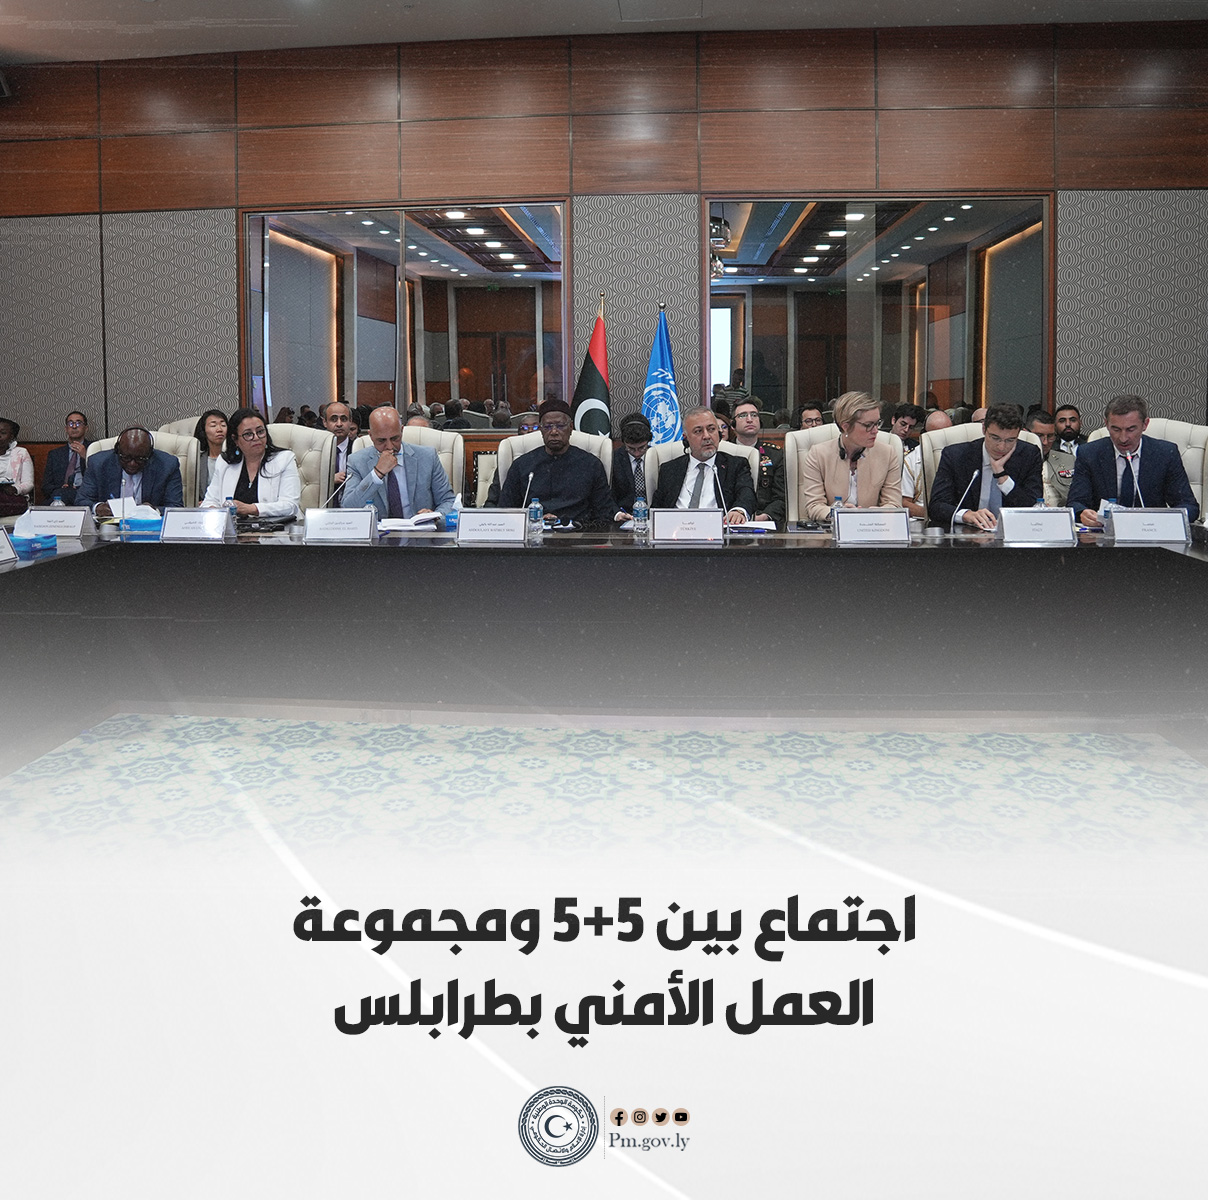 باتيلي: انعقاد أول جلسة لمجموعة العمل الأمنية على الاراضي الليبية سيساهم في دفع العملية السياسية إلى الأمام 